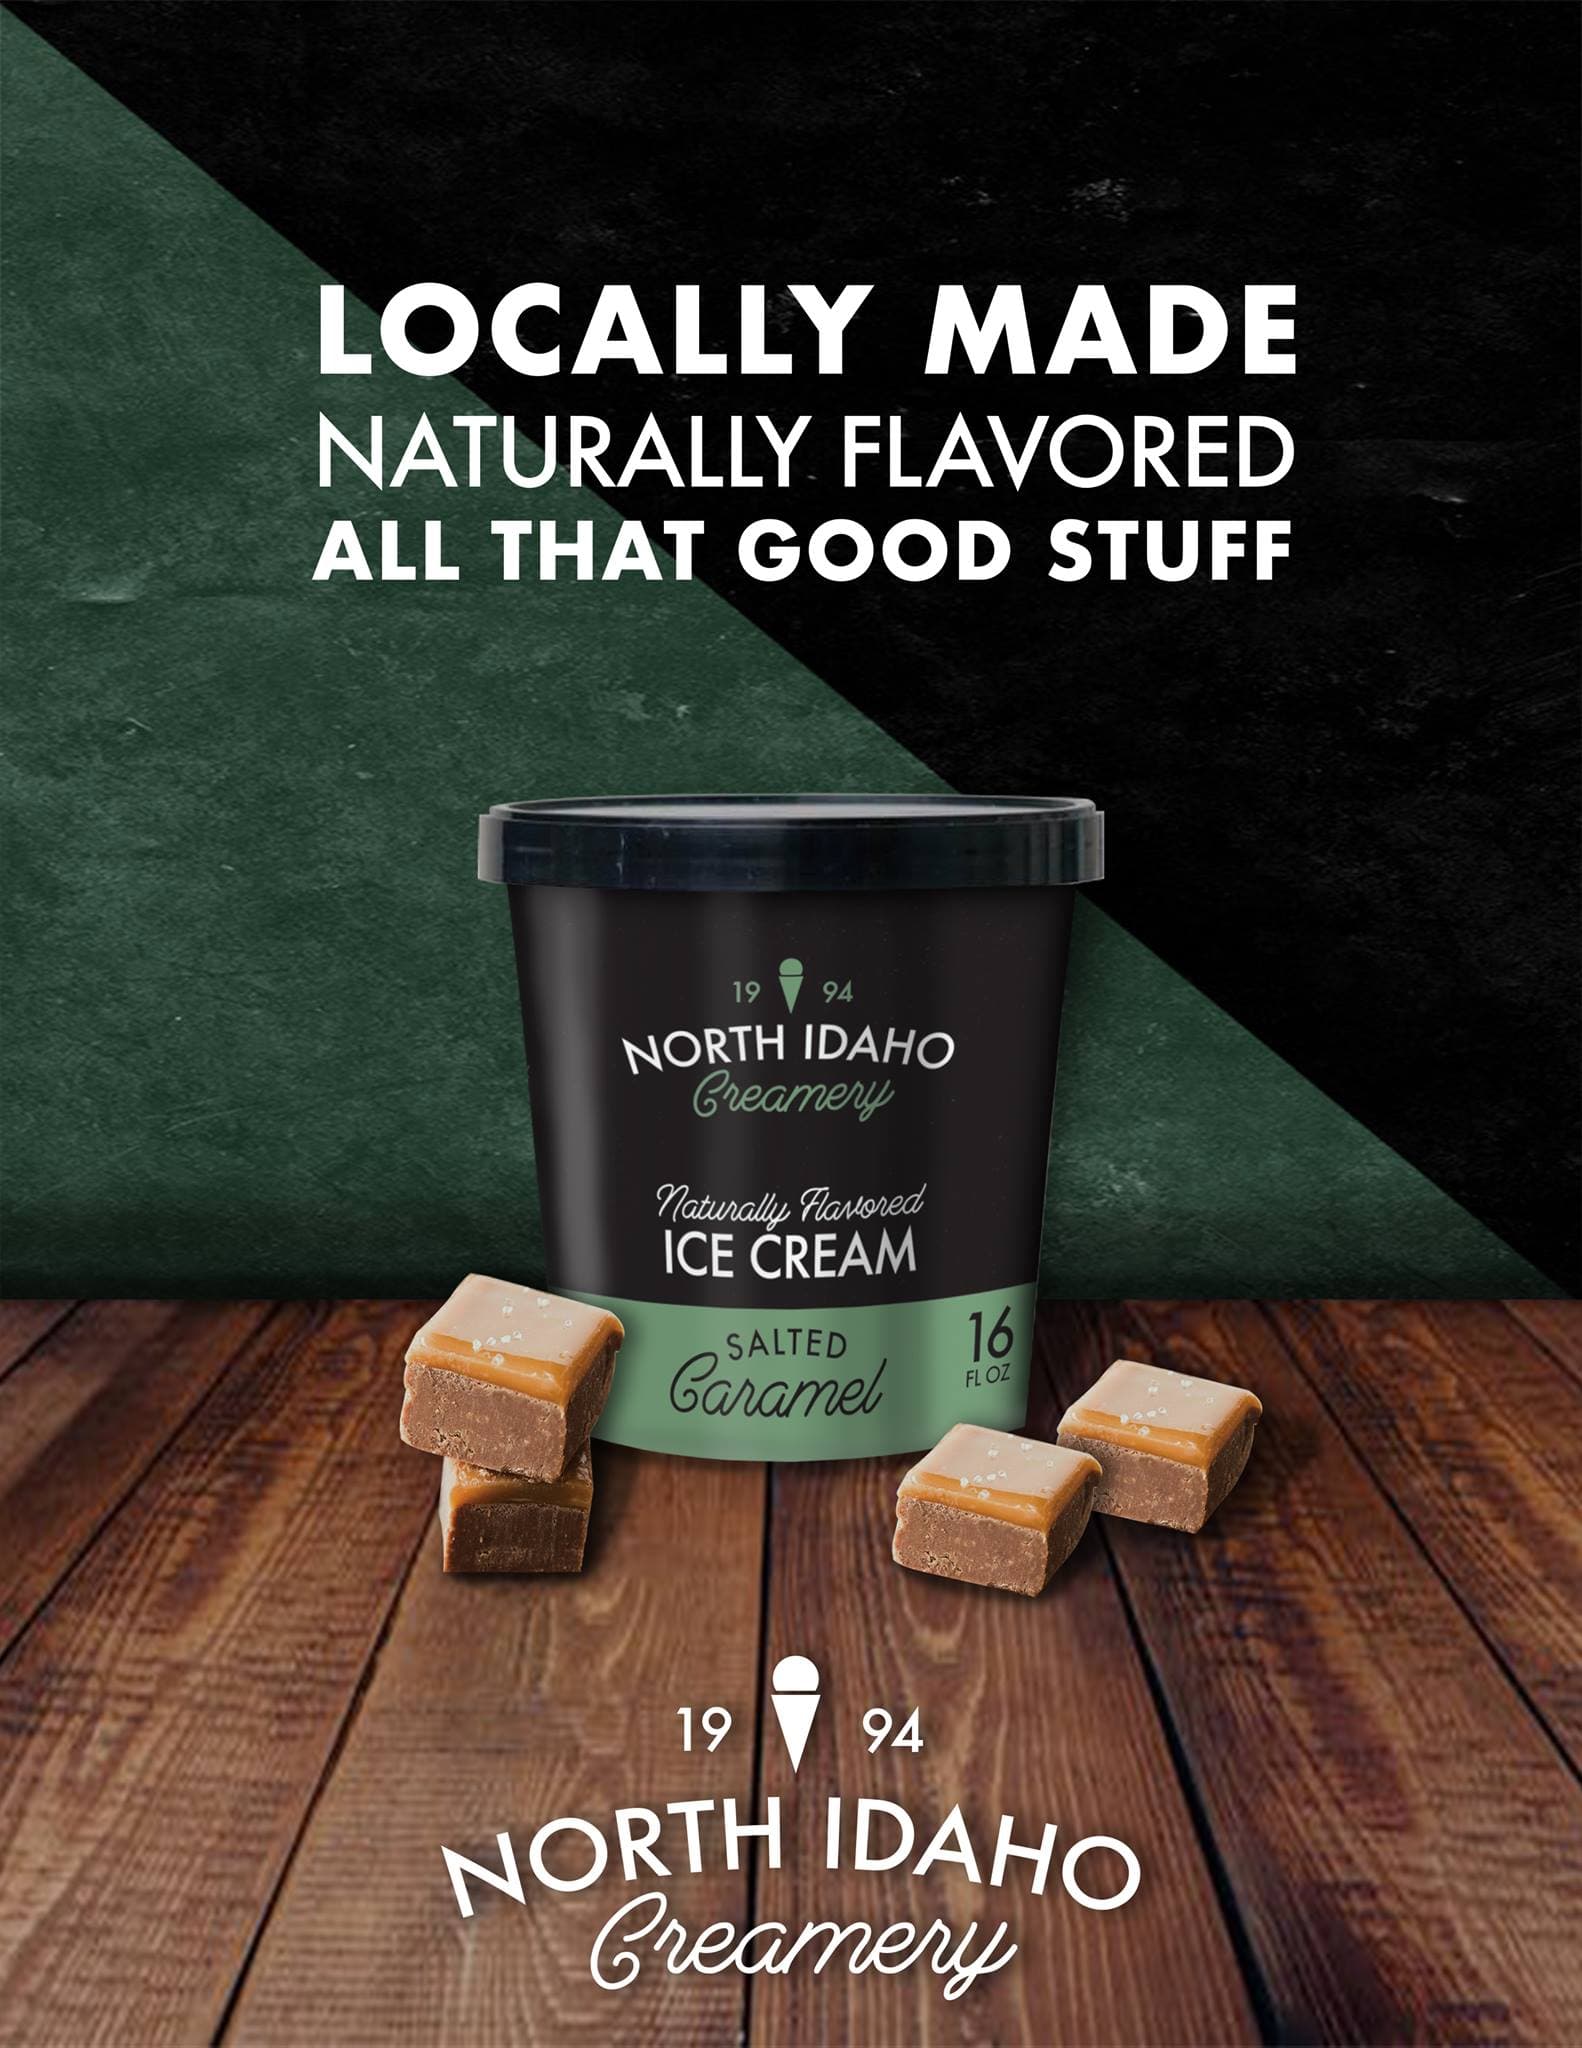 North Idaho Creamery ice cream ad by Sam Stoke.